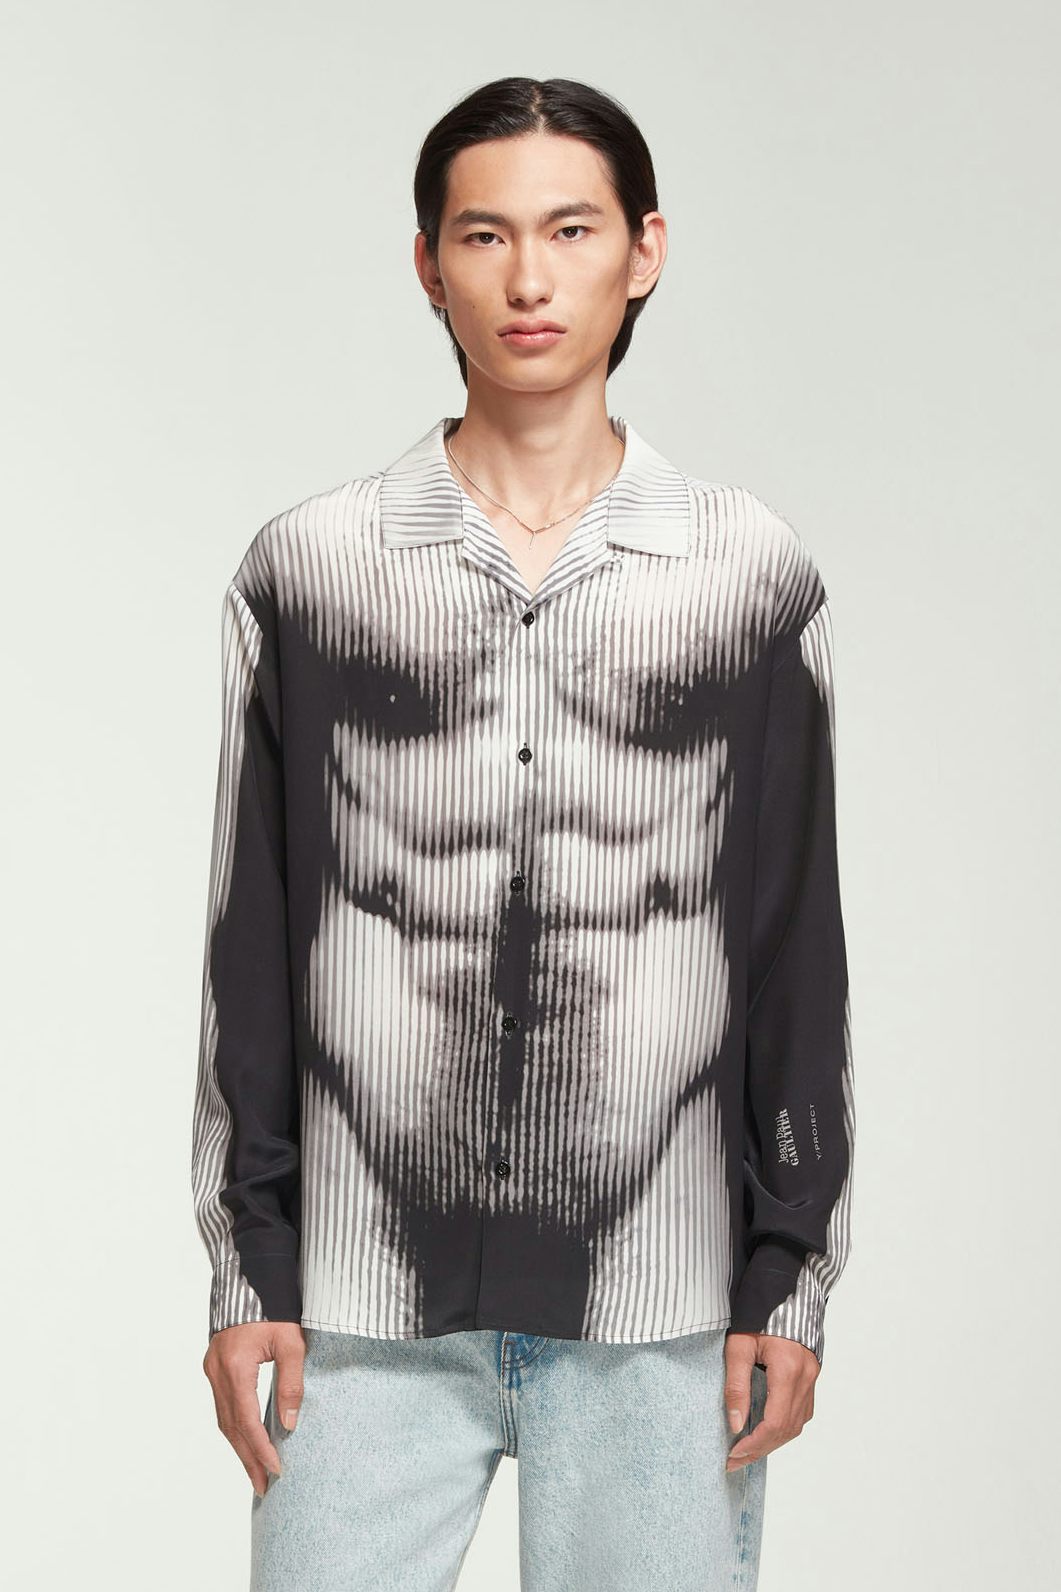 La Chemise Pyjama Body Morph Noire et Blanche Jean Paul Gaultier x Y/Project